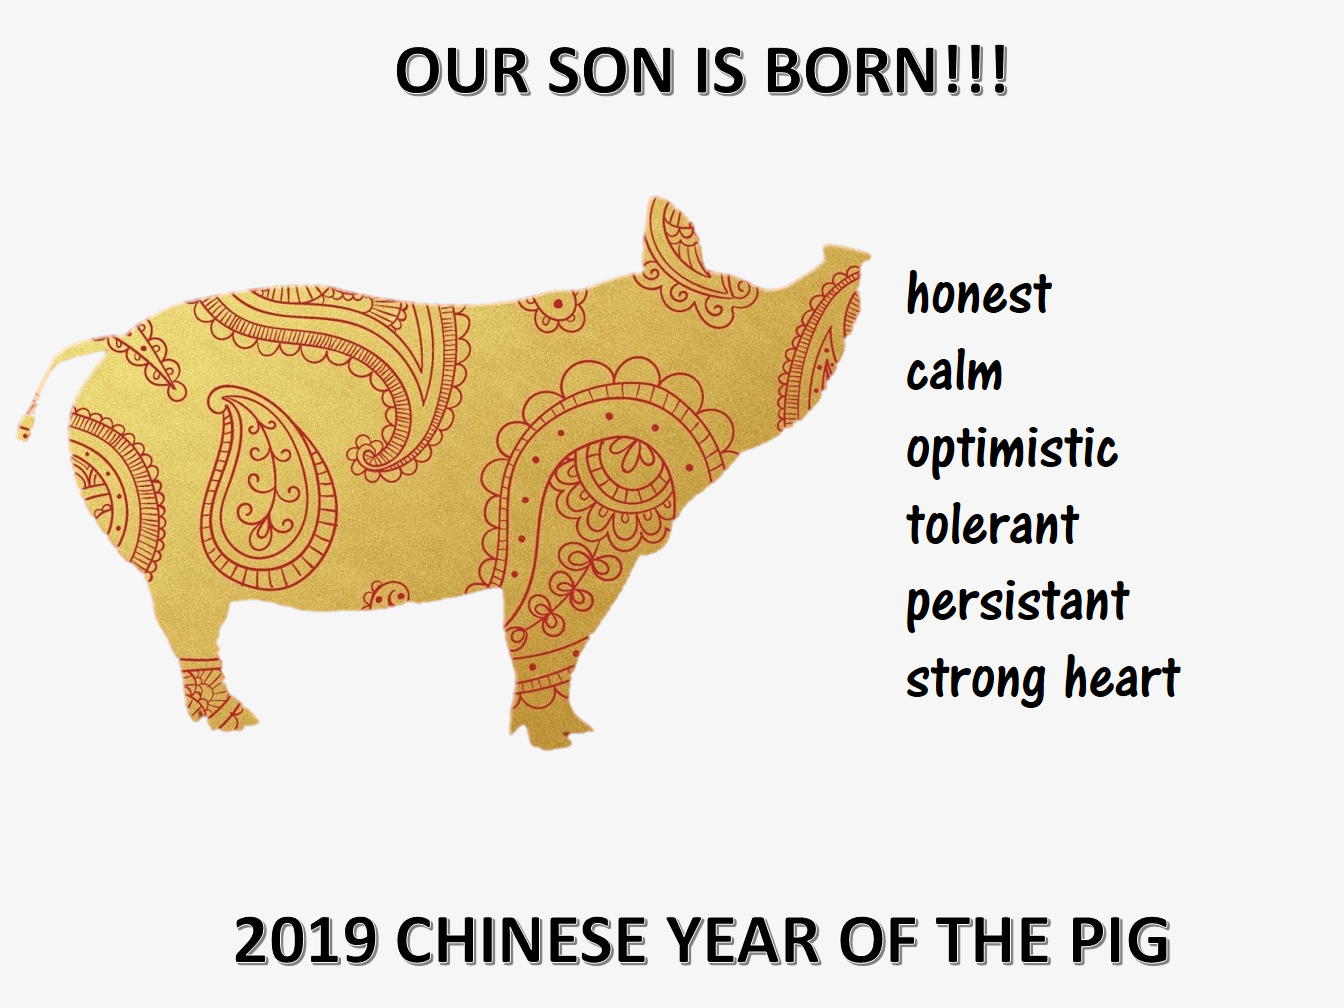 2019中国猪年儿子出生 main image